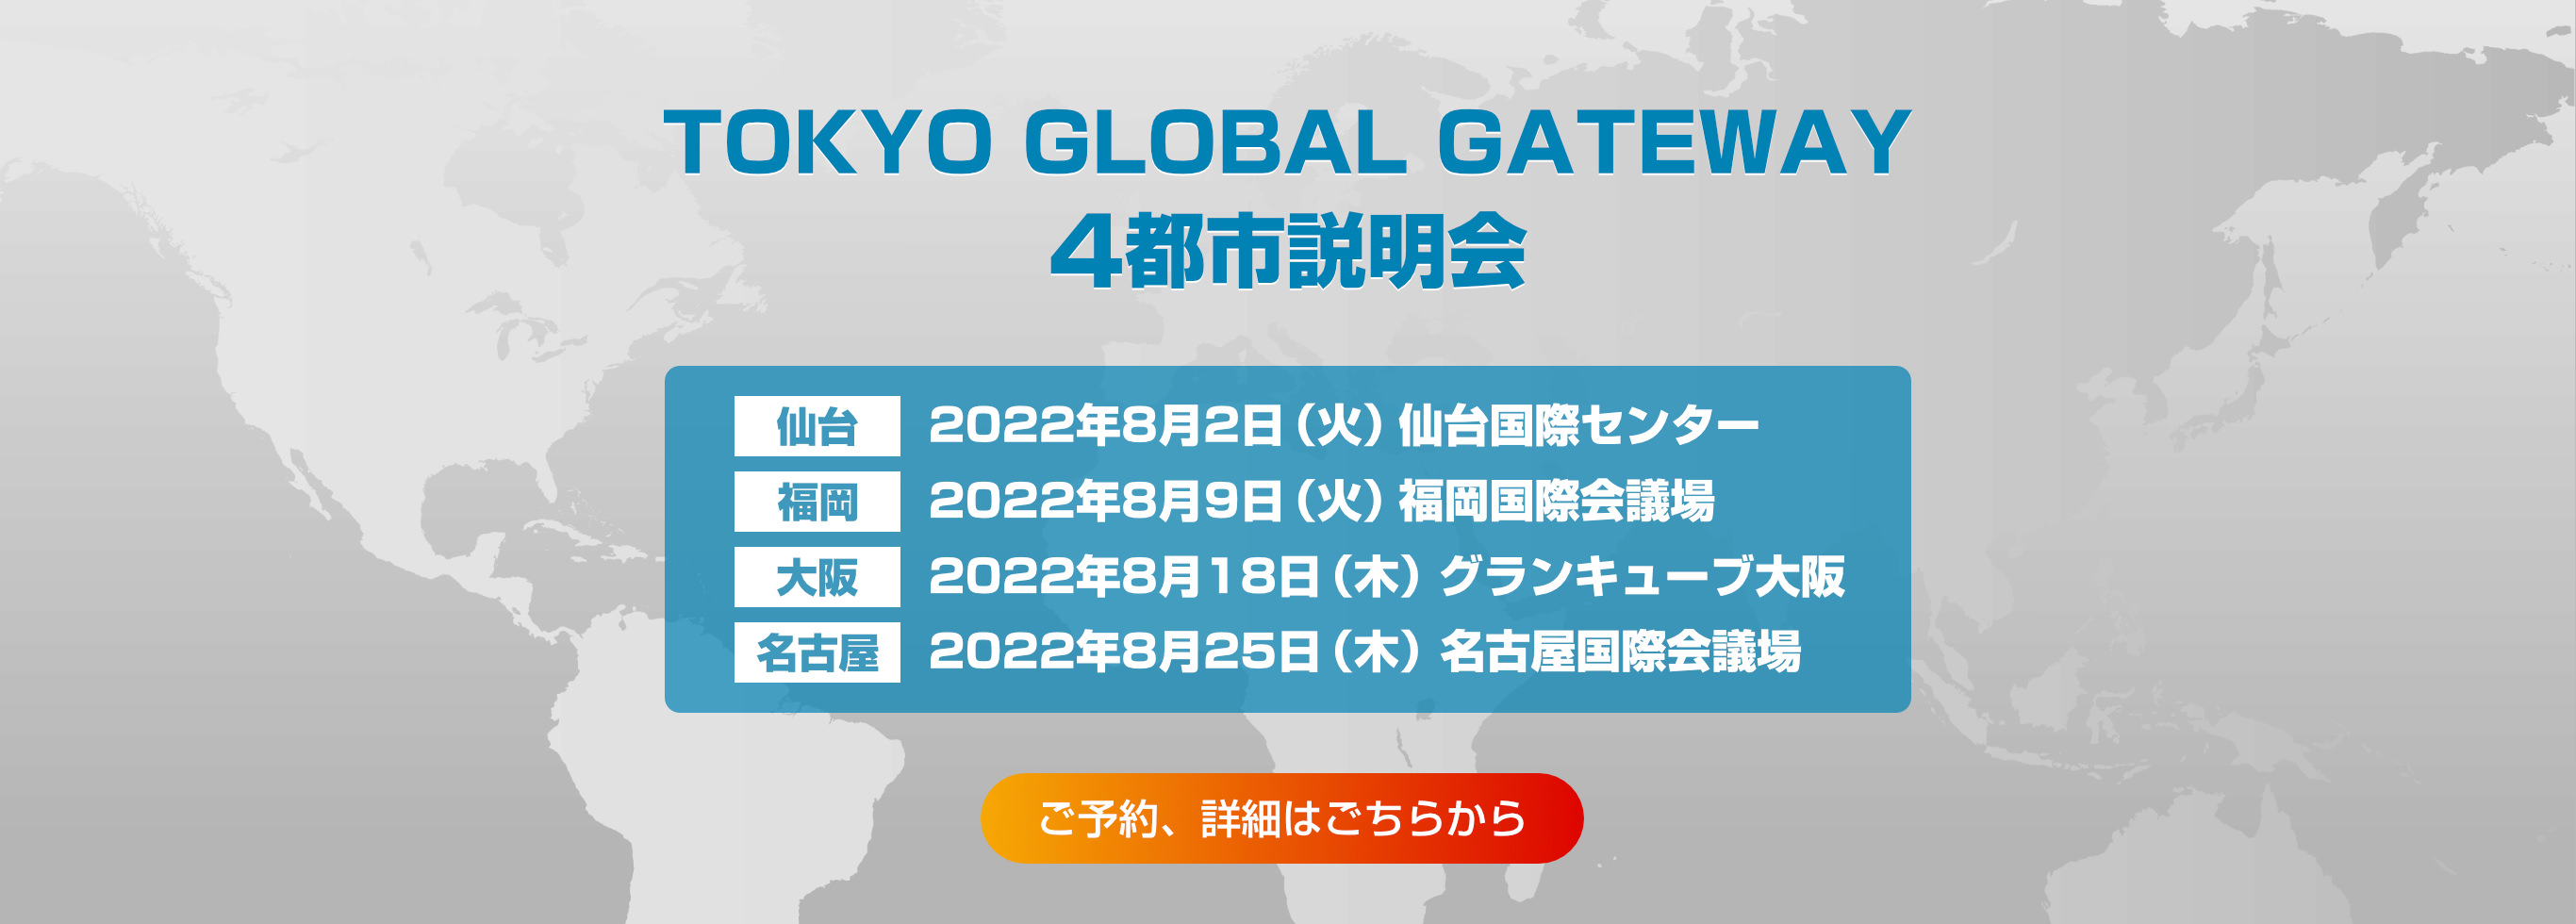 TOKYO GLOBAL GATEWAY 4都市説明会